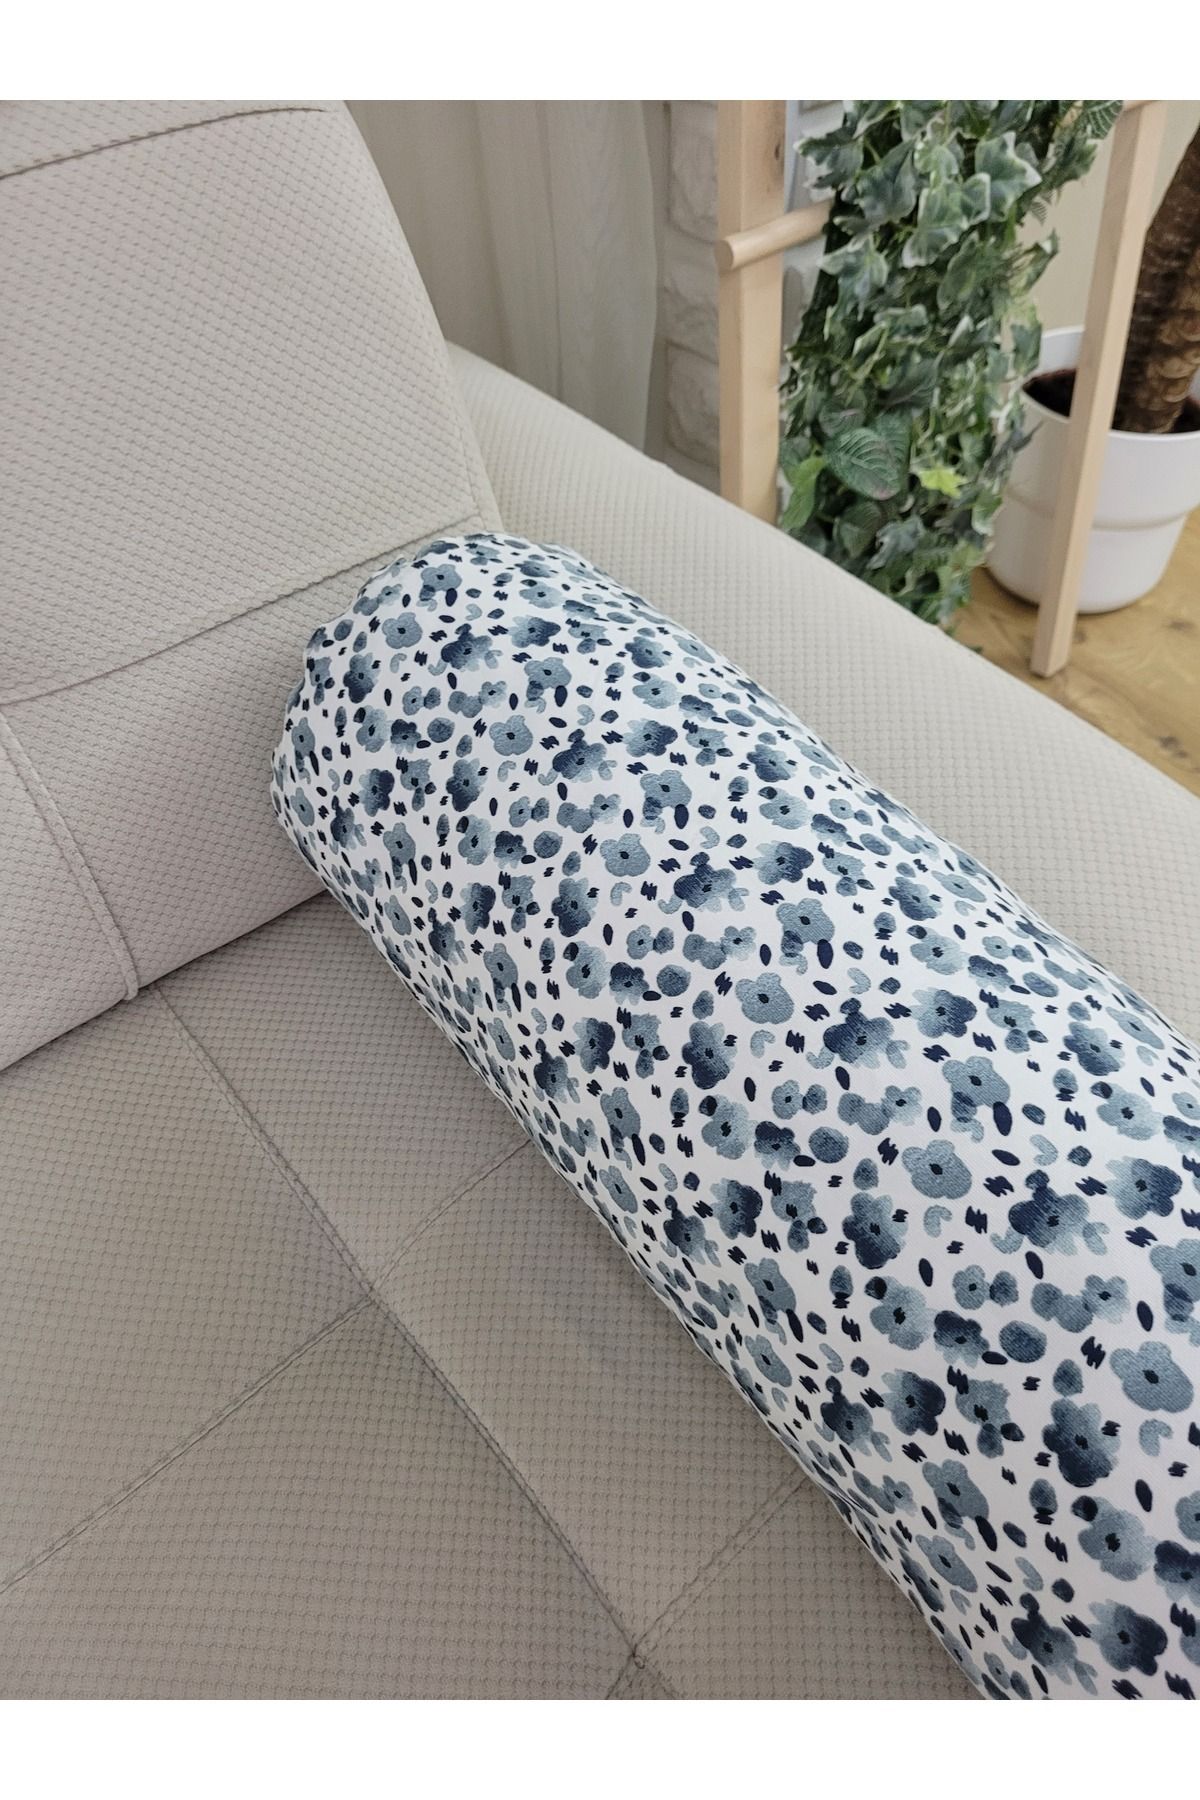 IKEA Kumaş Bolster Minderi - Silindir Yoga Yastığı - Sosis Yastık